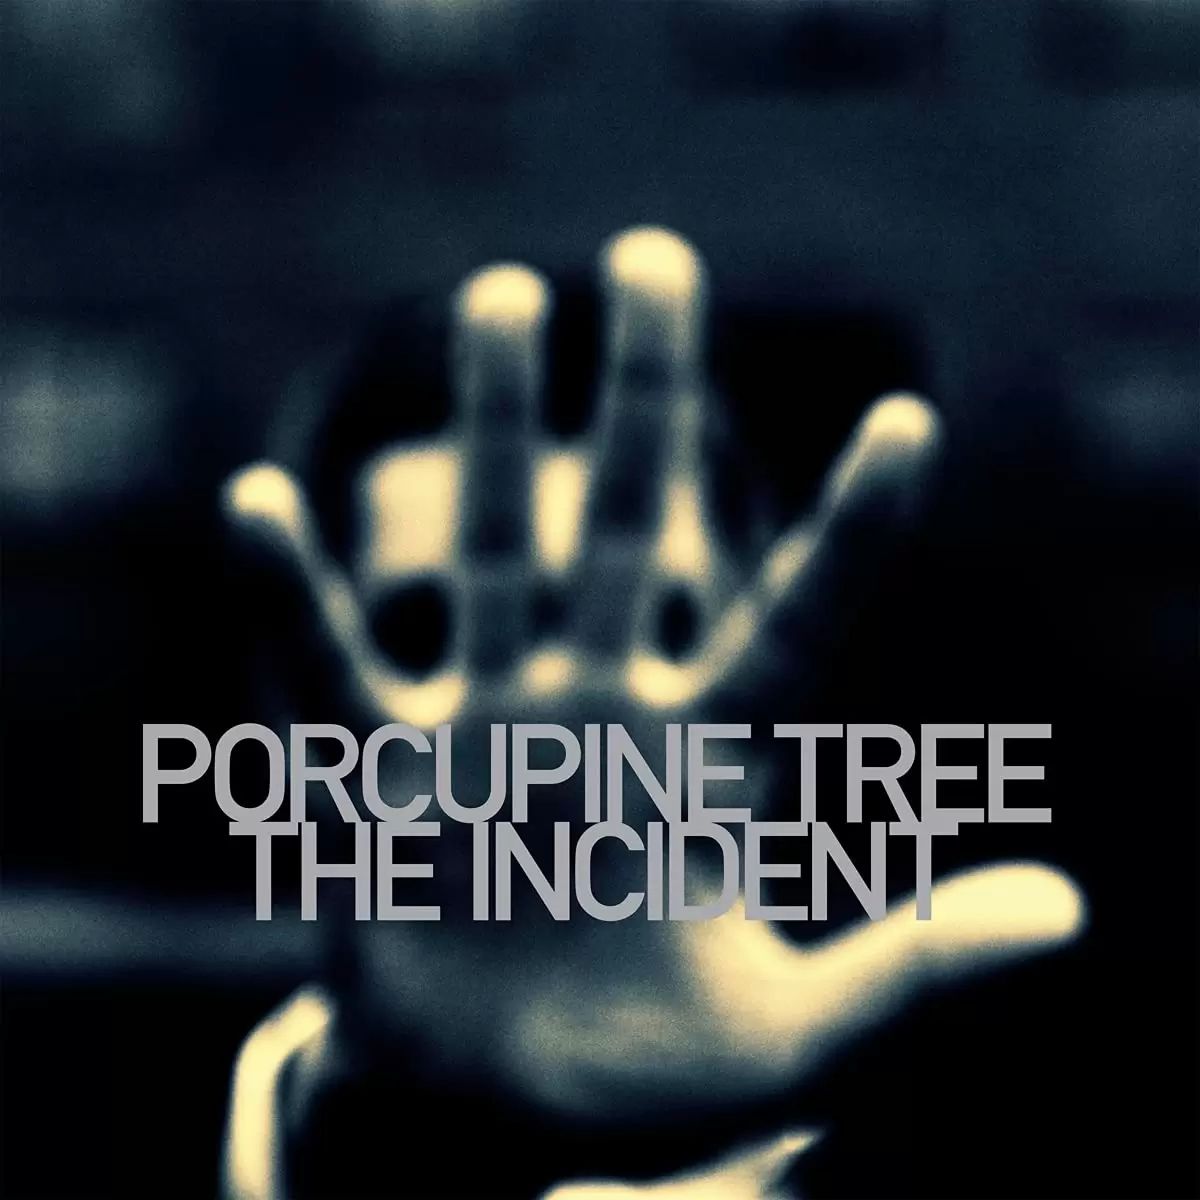 Виниловая пластинка Porcupine Tree, The Incident (0802644826219) виниловая пластинка u2 the joshua tree